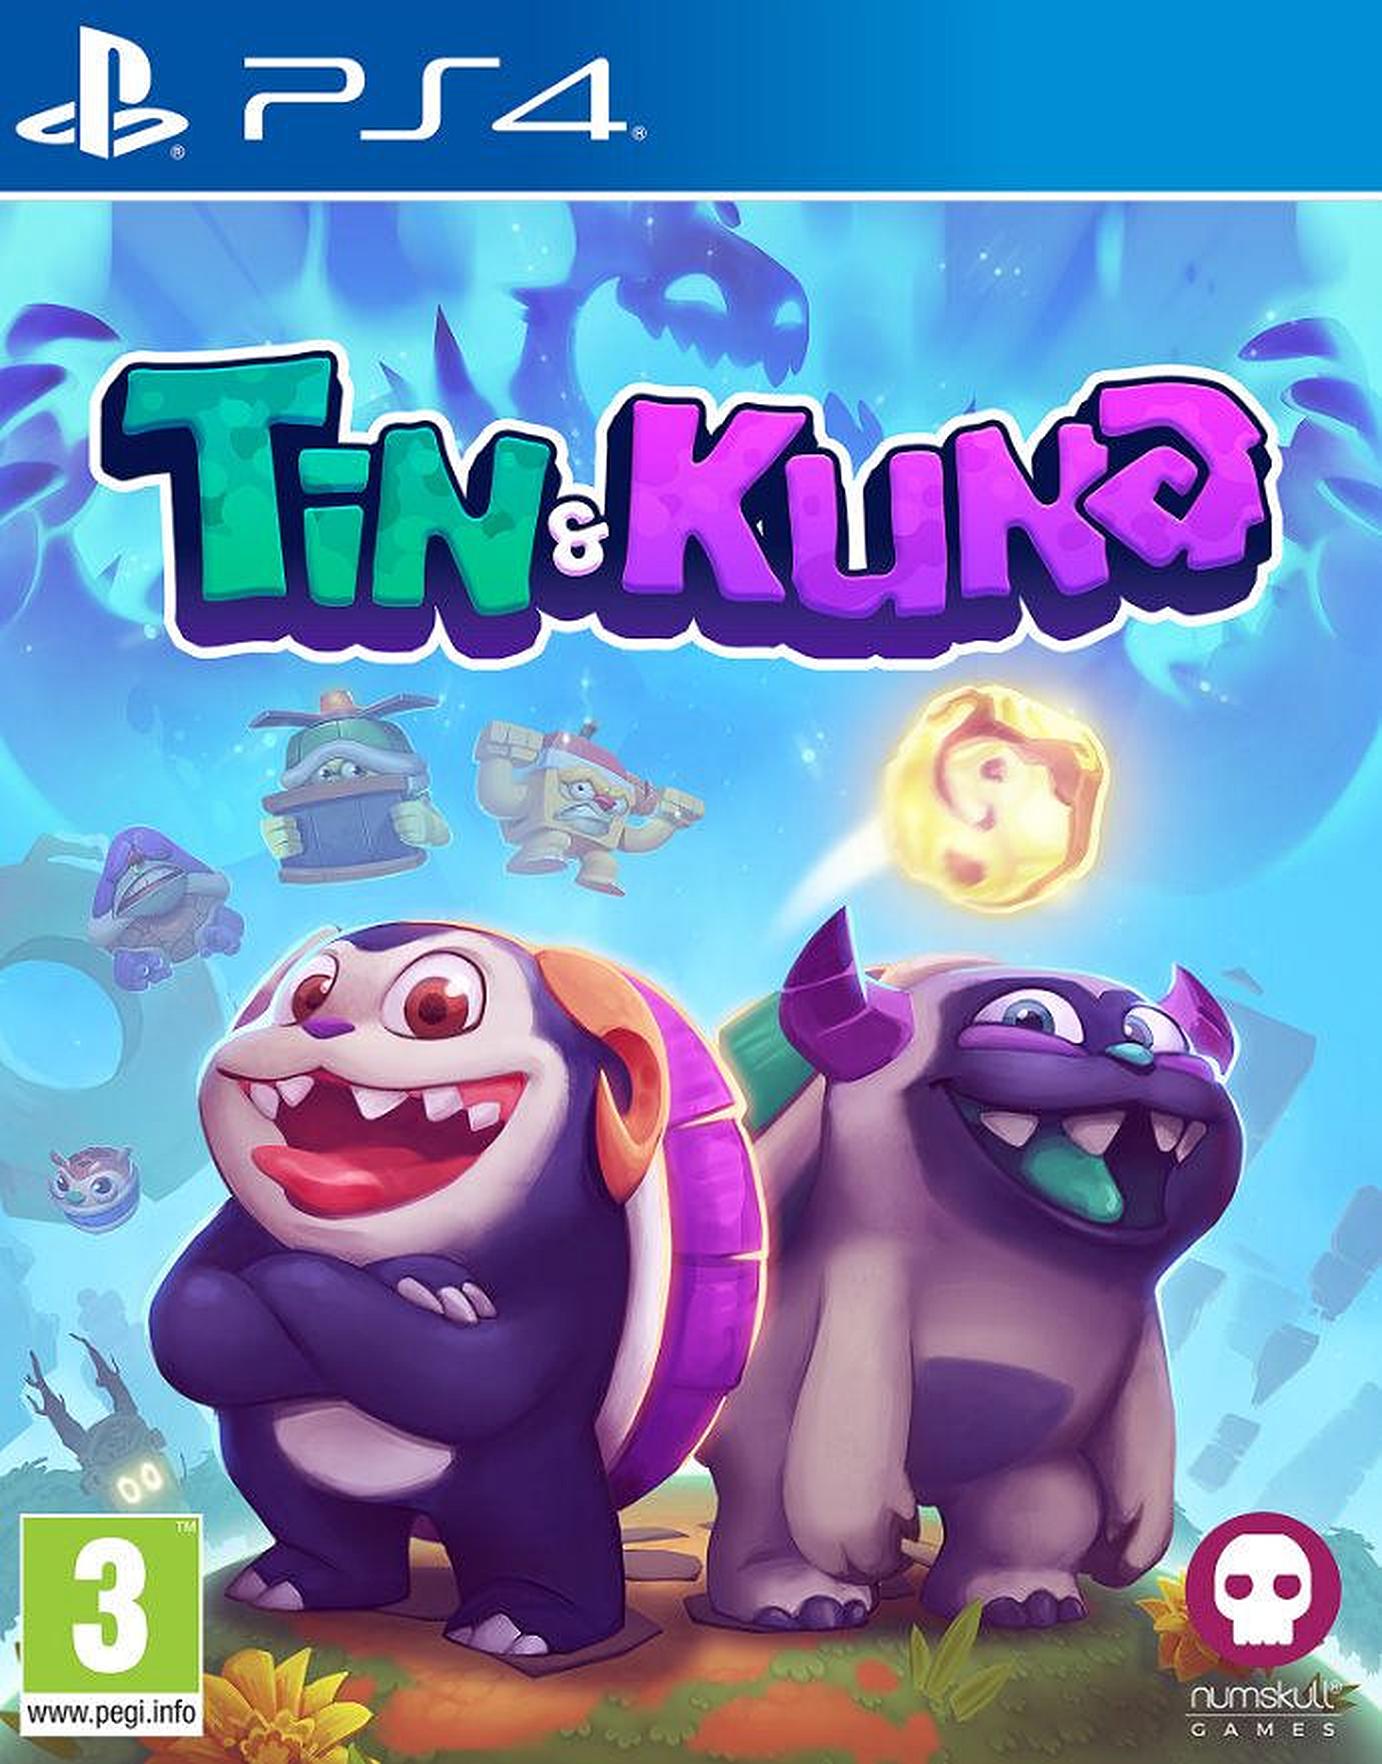 Tin&Kuna